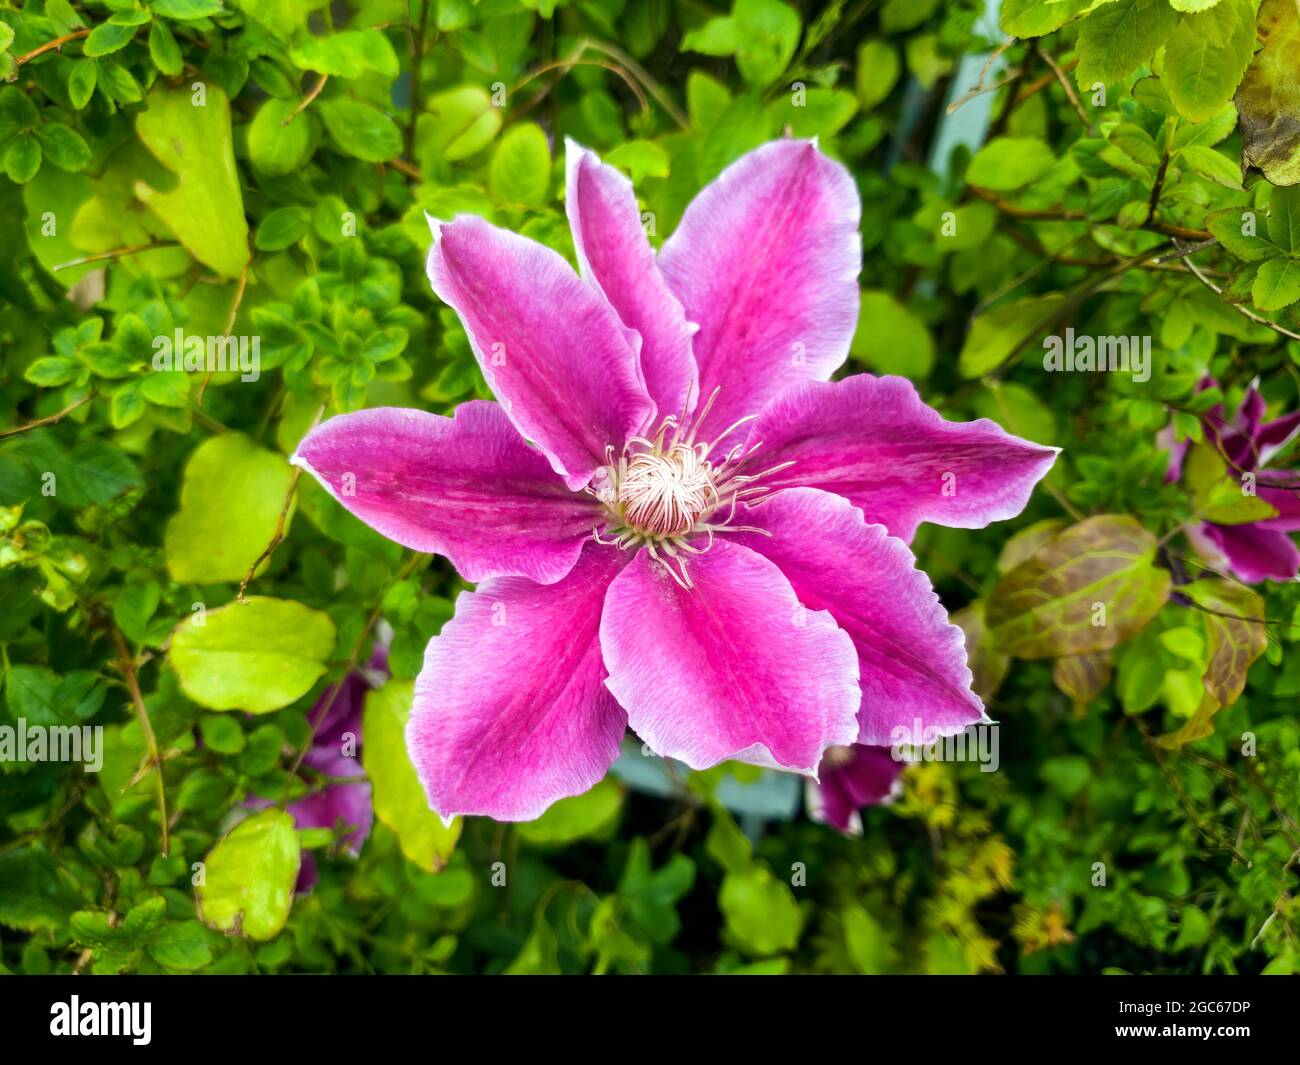 Clematis una pianta fiorente estiva primaverile con un fiore viola d'estate comunemente noto come immagine di stock photo Foto Stock